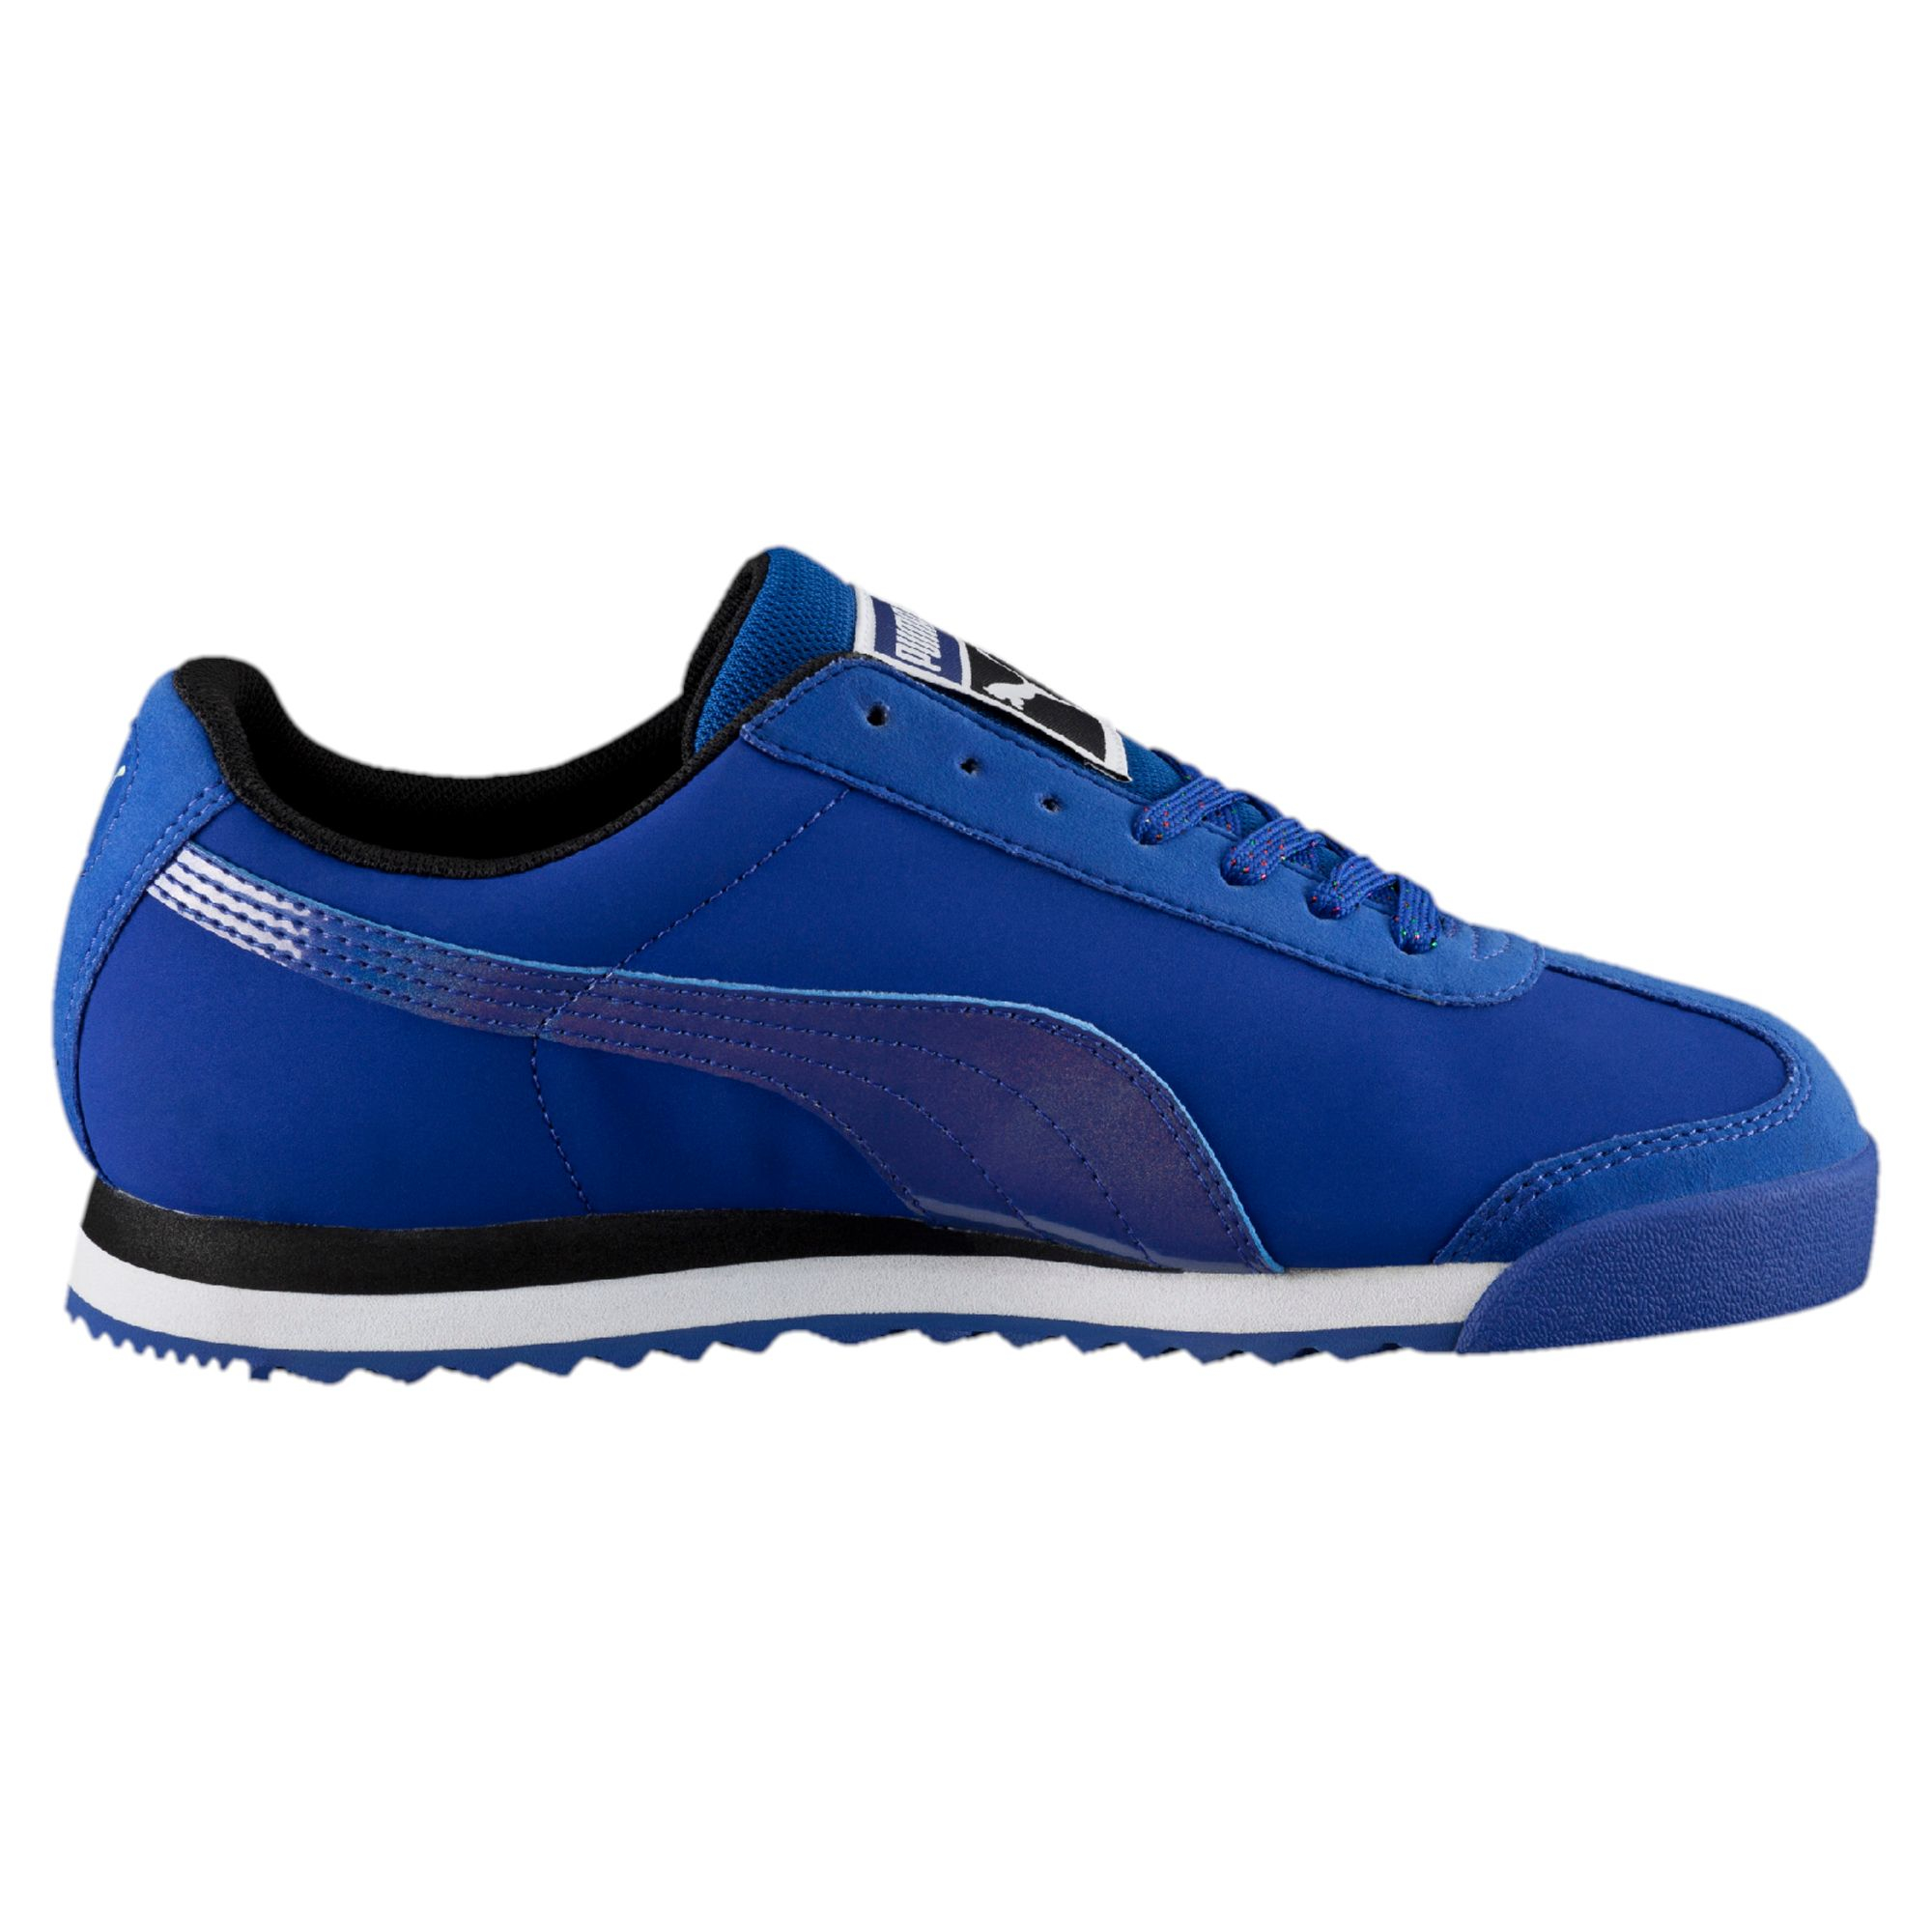 Lyst - Puma Roma Deep Summer Women's Sneakers in Blue